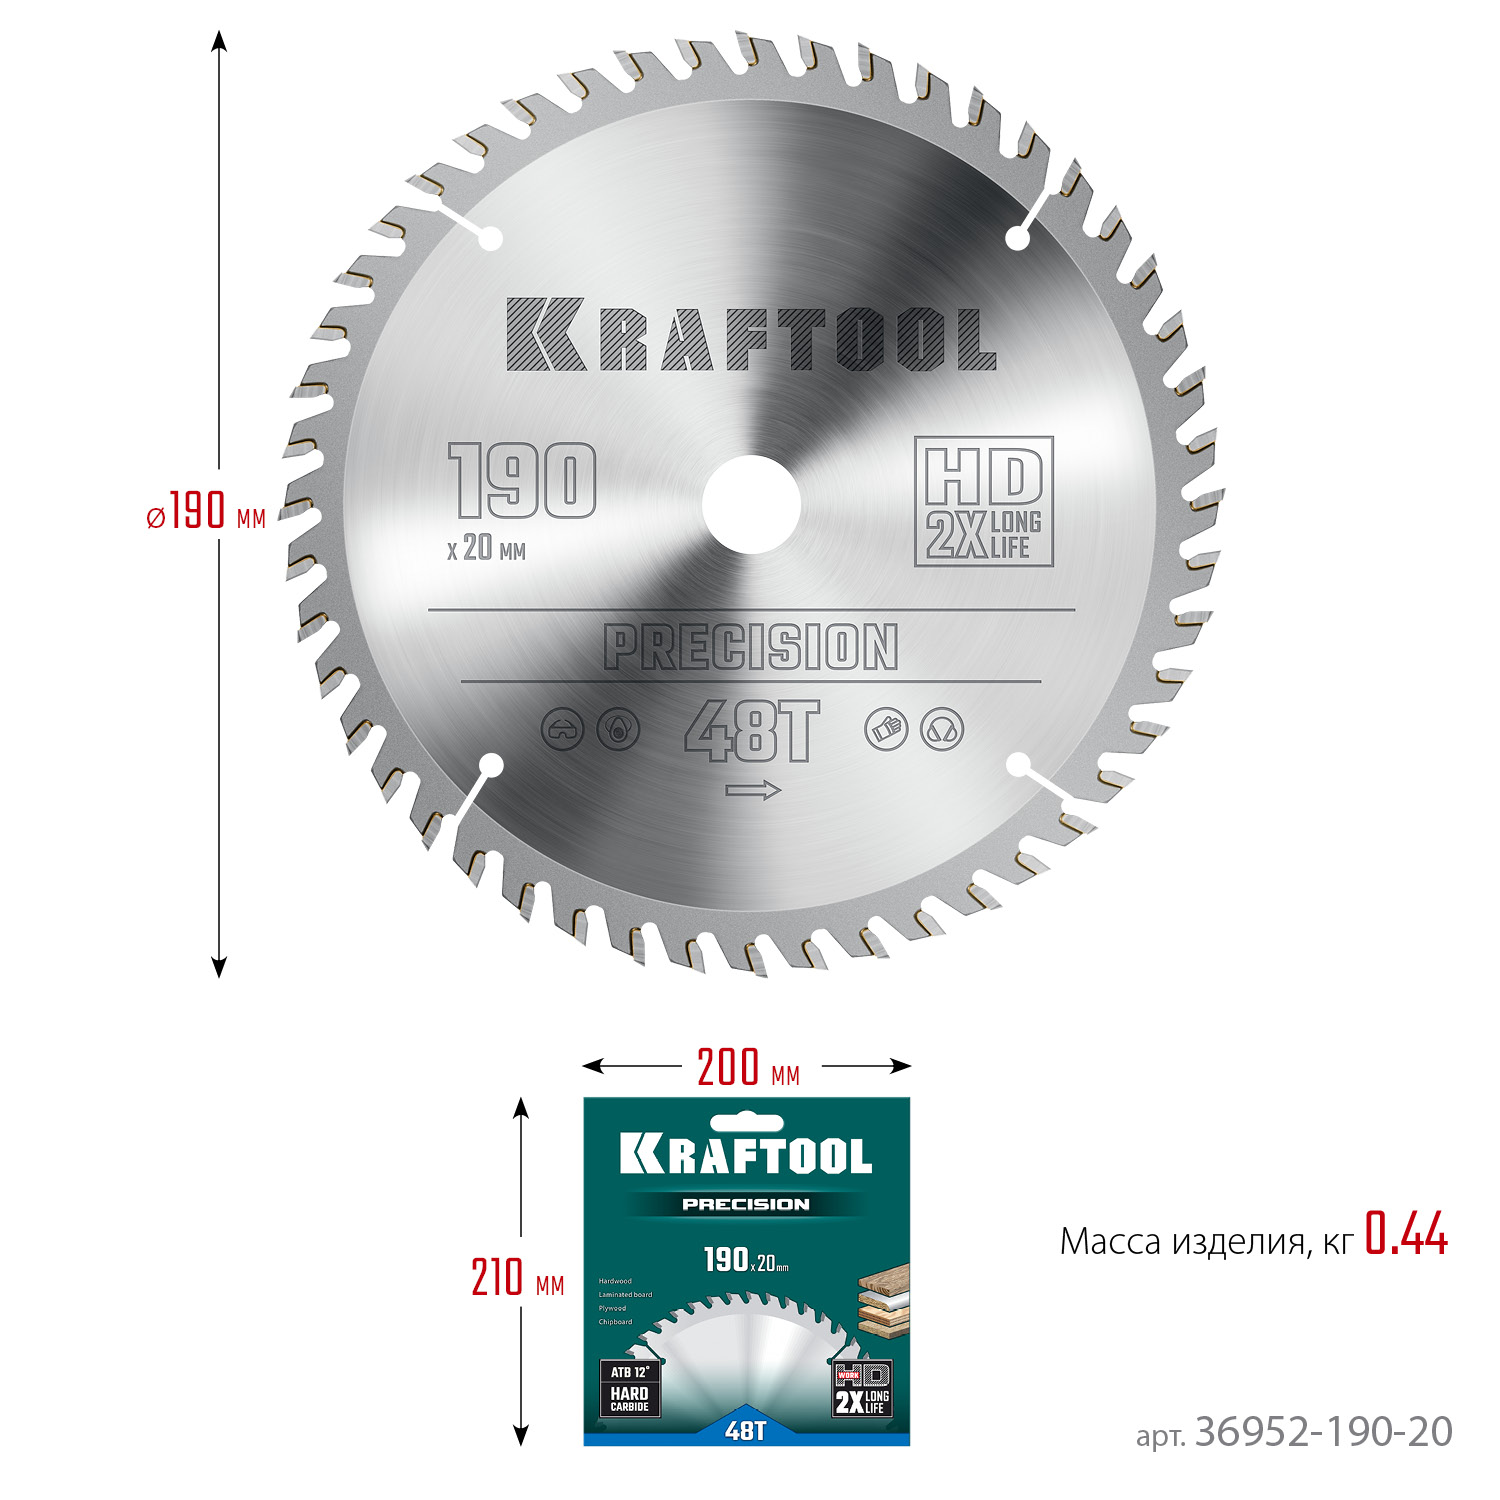 KRAFTOOL Precision, 190 х 20 мм, 48Т, пильный диск по дереву (36952-190-20)